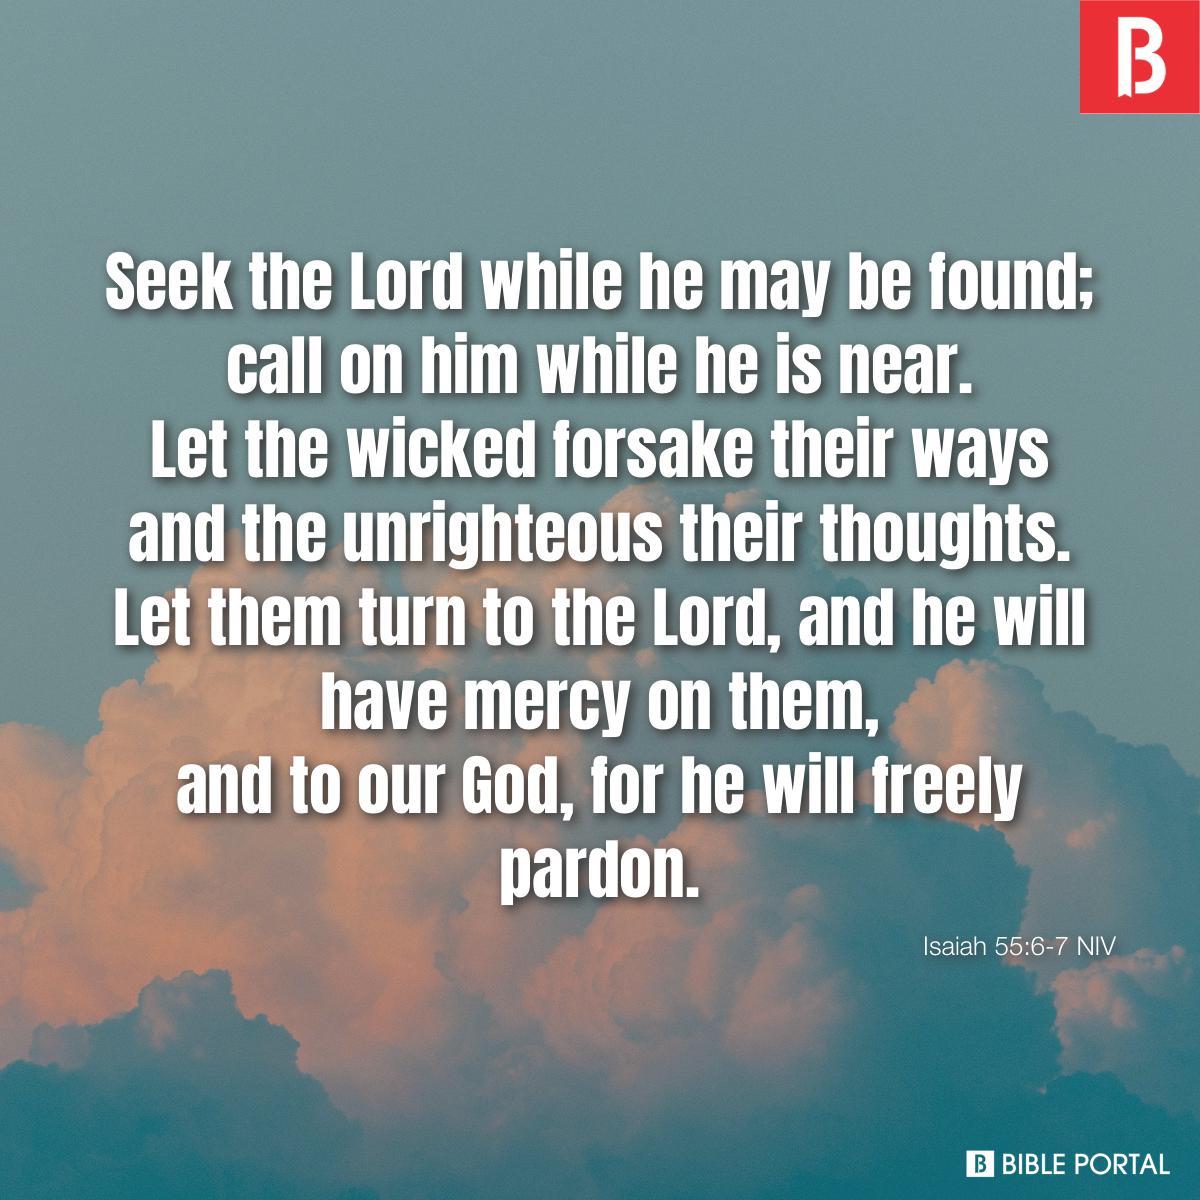 Isaiah 55:6-7 NIV